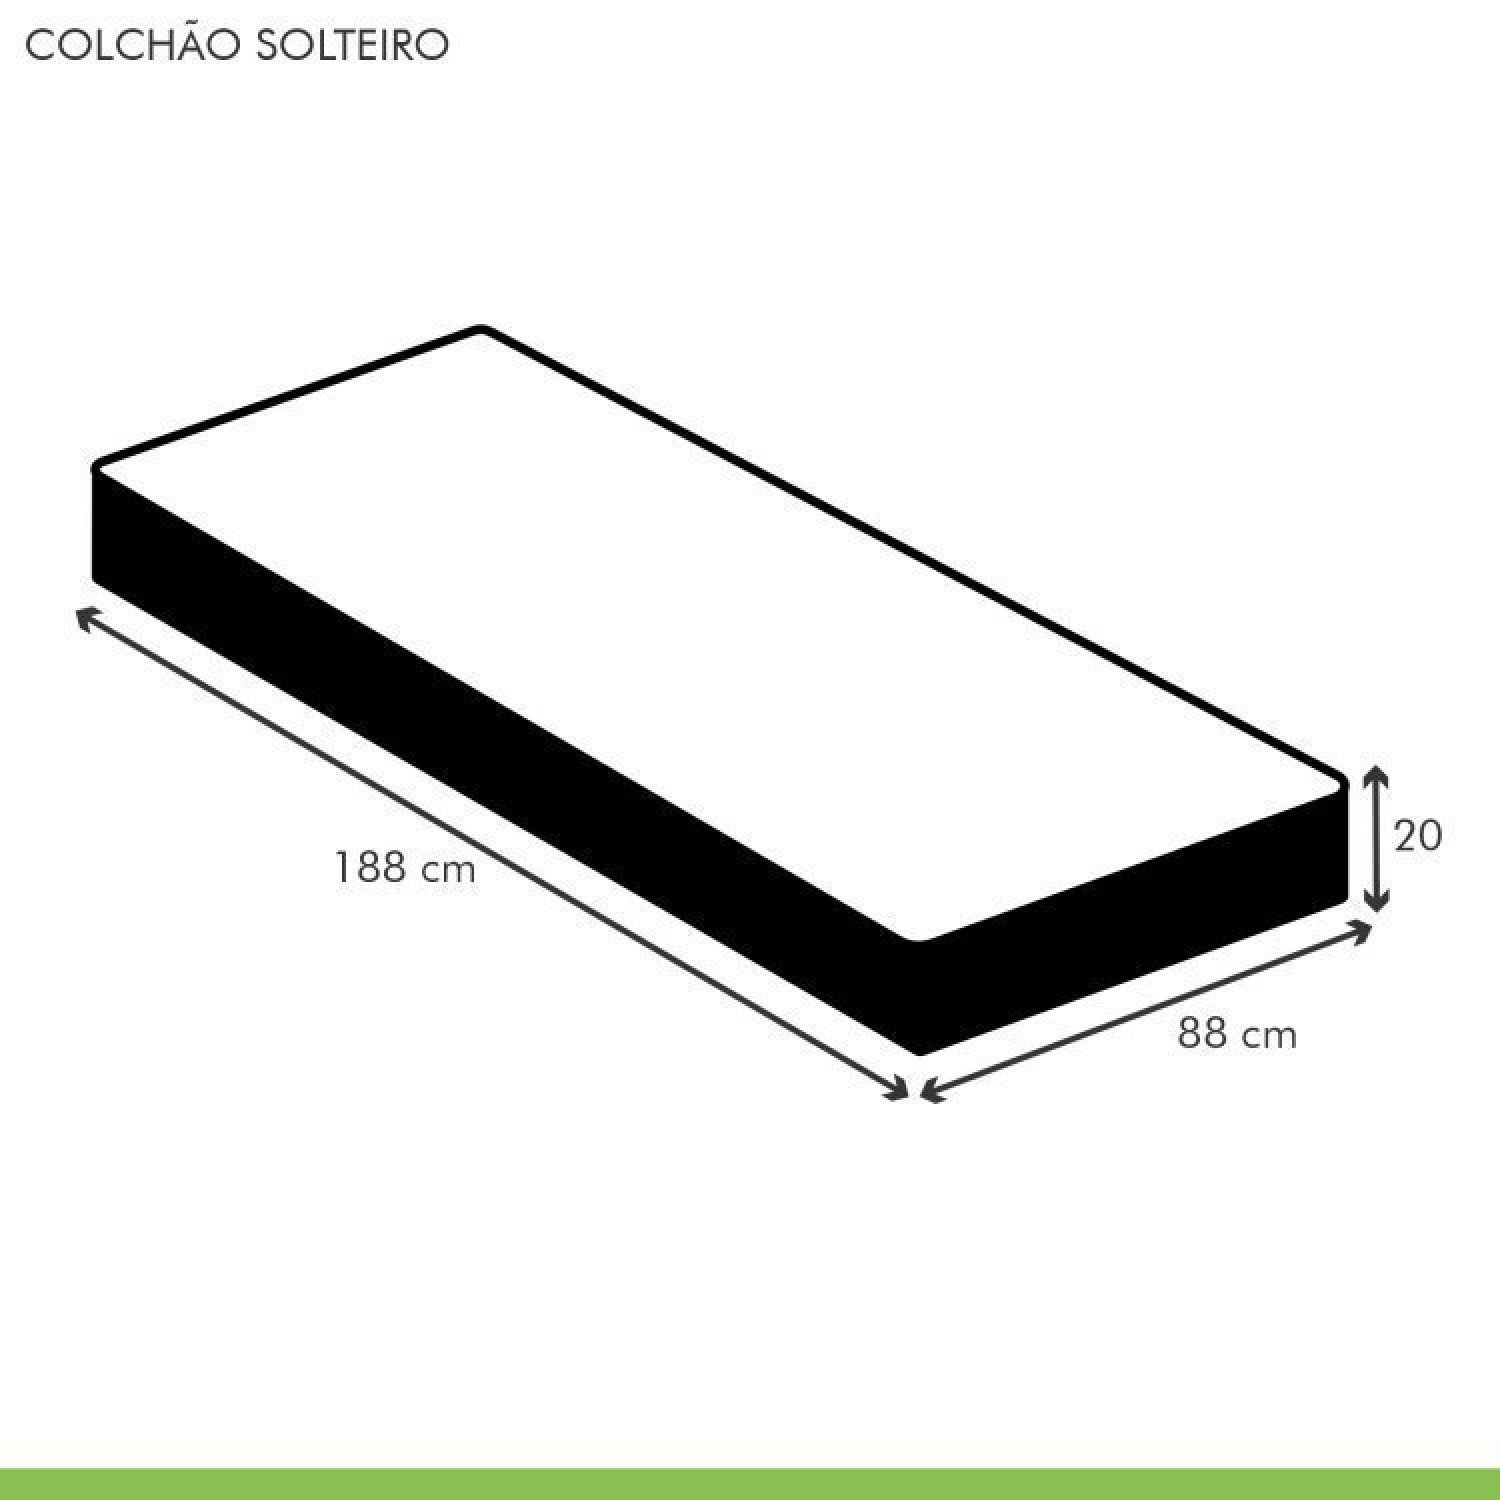 Kit com 2 Colchões Solteiro Quality Plus Duoface 20x88x188cm - 6